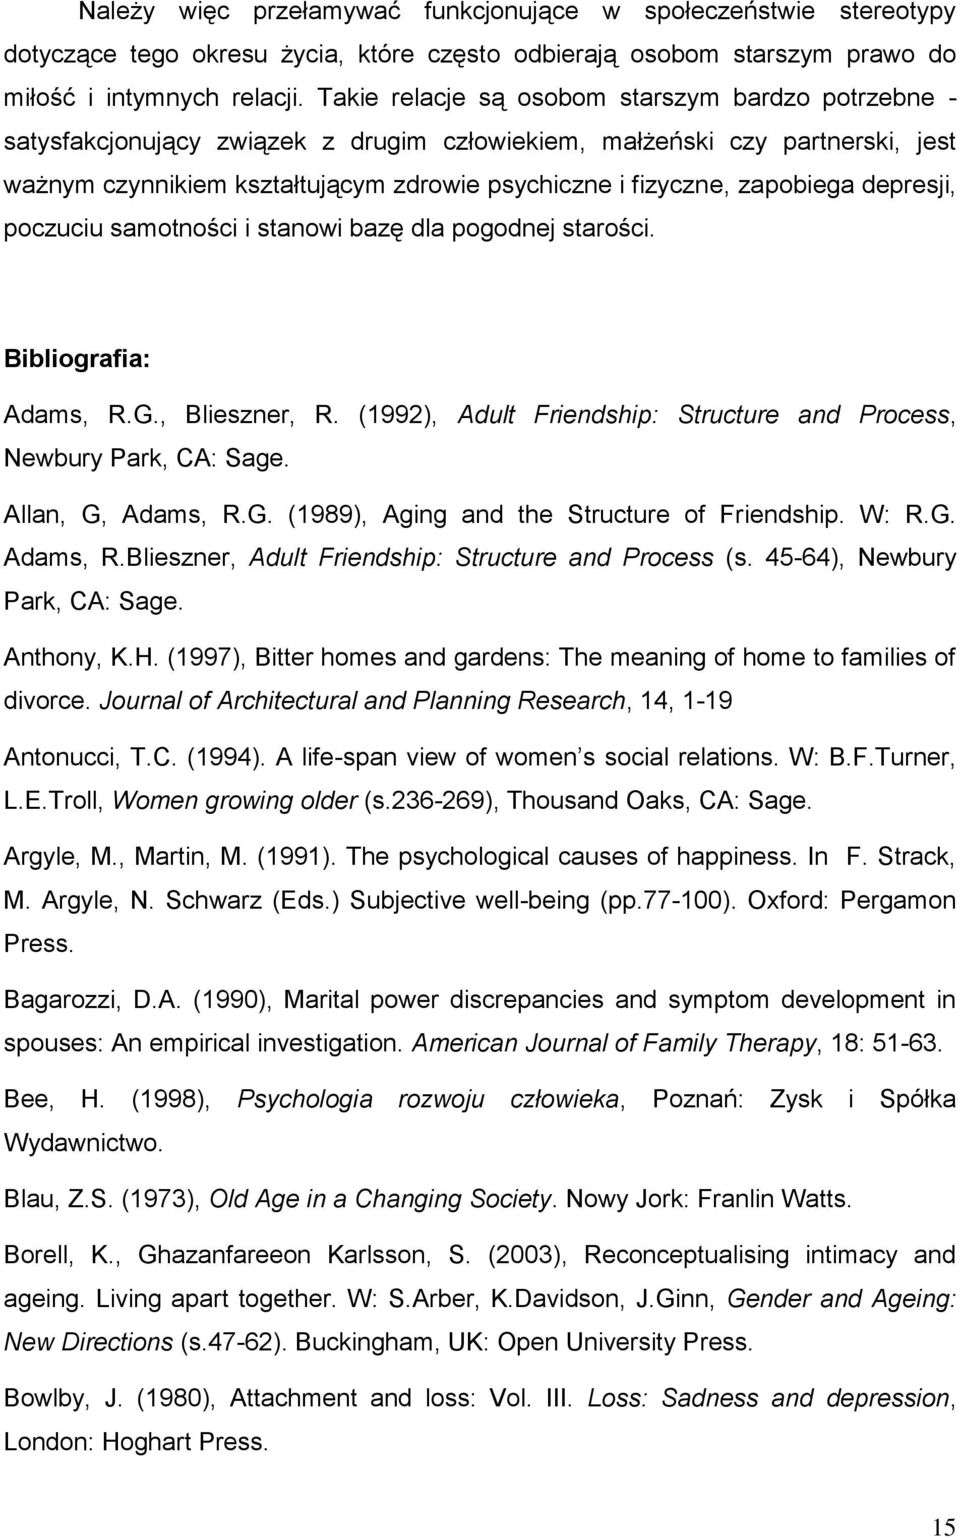 zapobiega depresji, poczuciu samotności i stanowi bazę dla pogodnej starości. Bibliografia: Adams, R.G., Blieszner, R. (1992), Adult Friendship: Structure and Process, Newbury Park, CA: Sage.